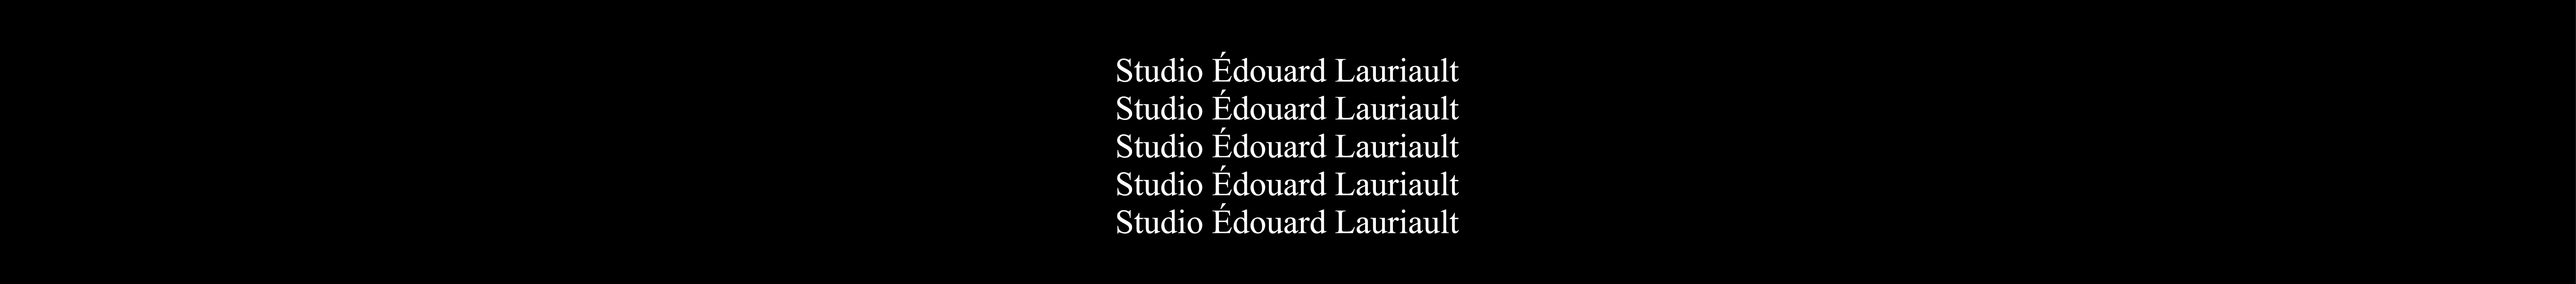 Banner de perfil de Édouard Lauriault